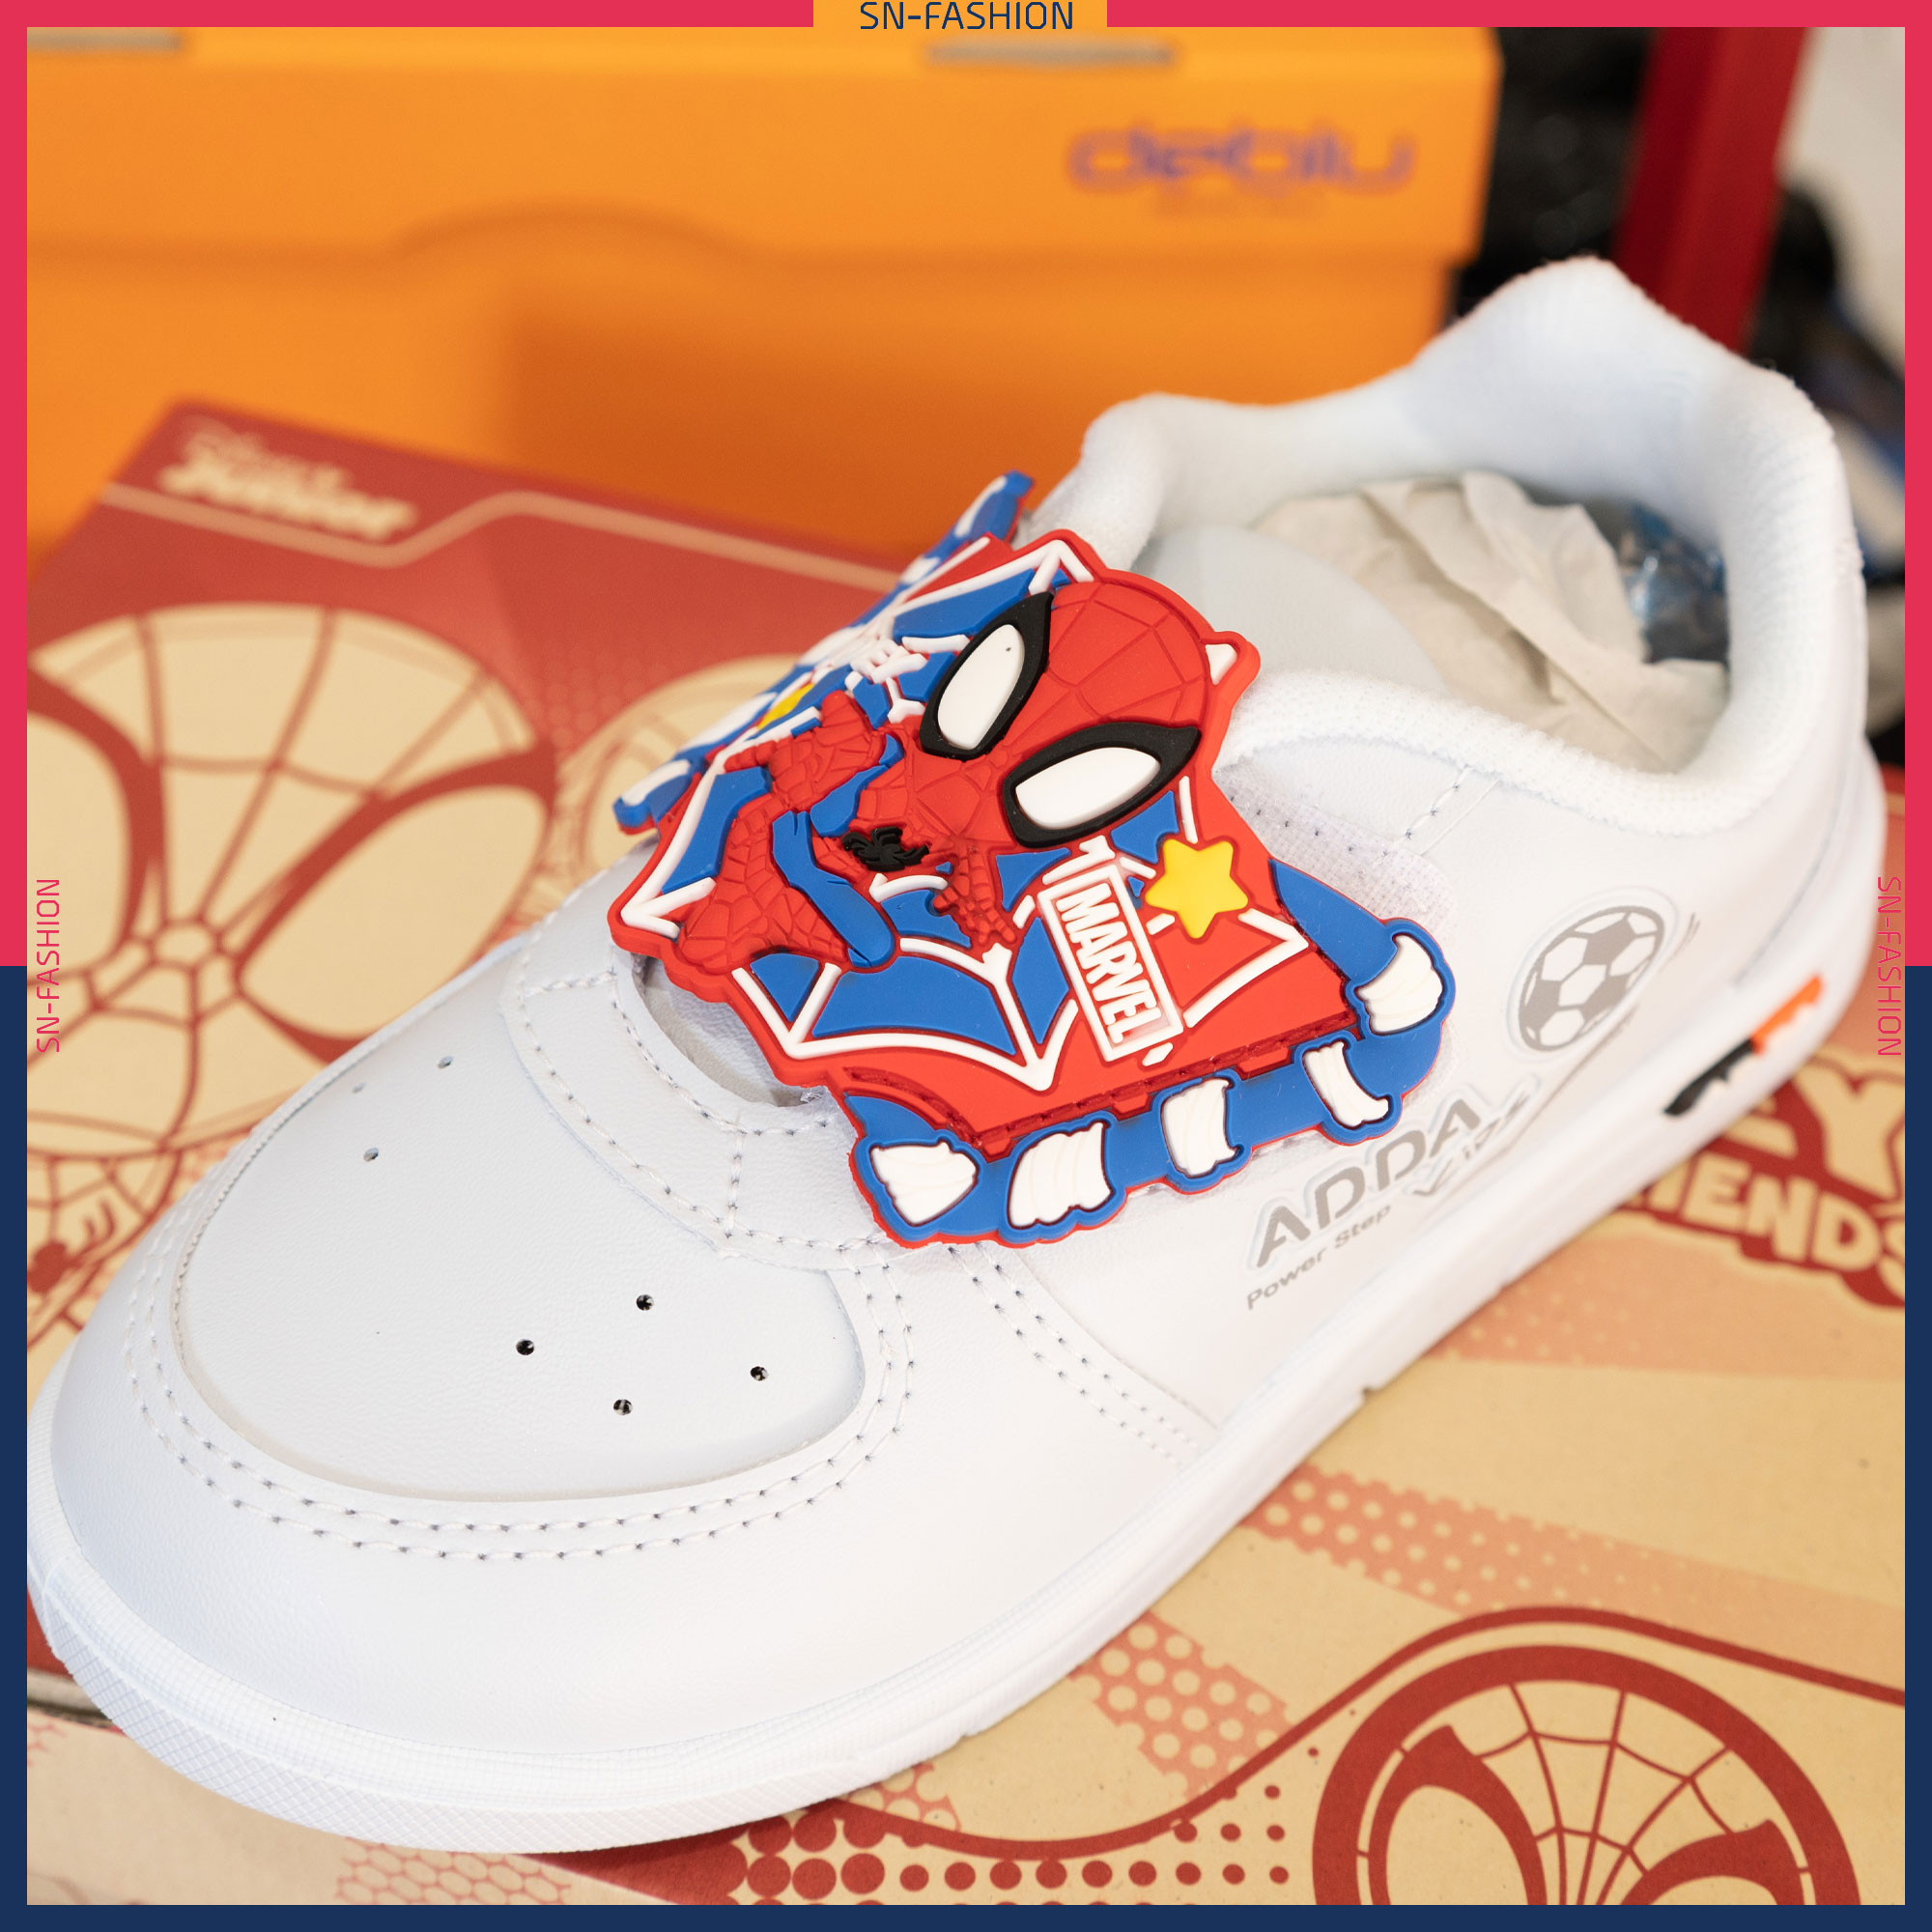 ภาพประกอบคำอธิบาย ADDA รองเท้าผ้าใบเด็ก สไปเดอร์แมน Spiderman ไอ้แมงมุม นักเรียน แอดด้า สีขาว ผ้าใบ ผ้าใบสีขาว รองเท้าผ้าใบสีขาว